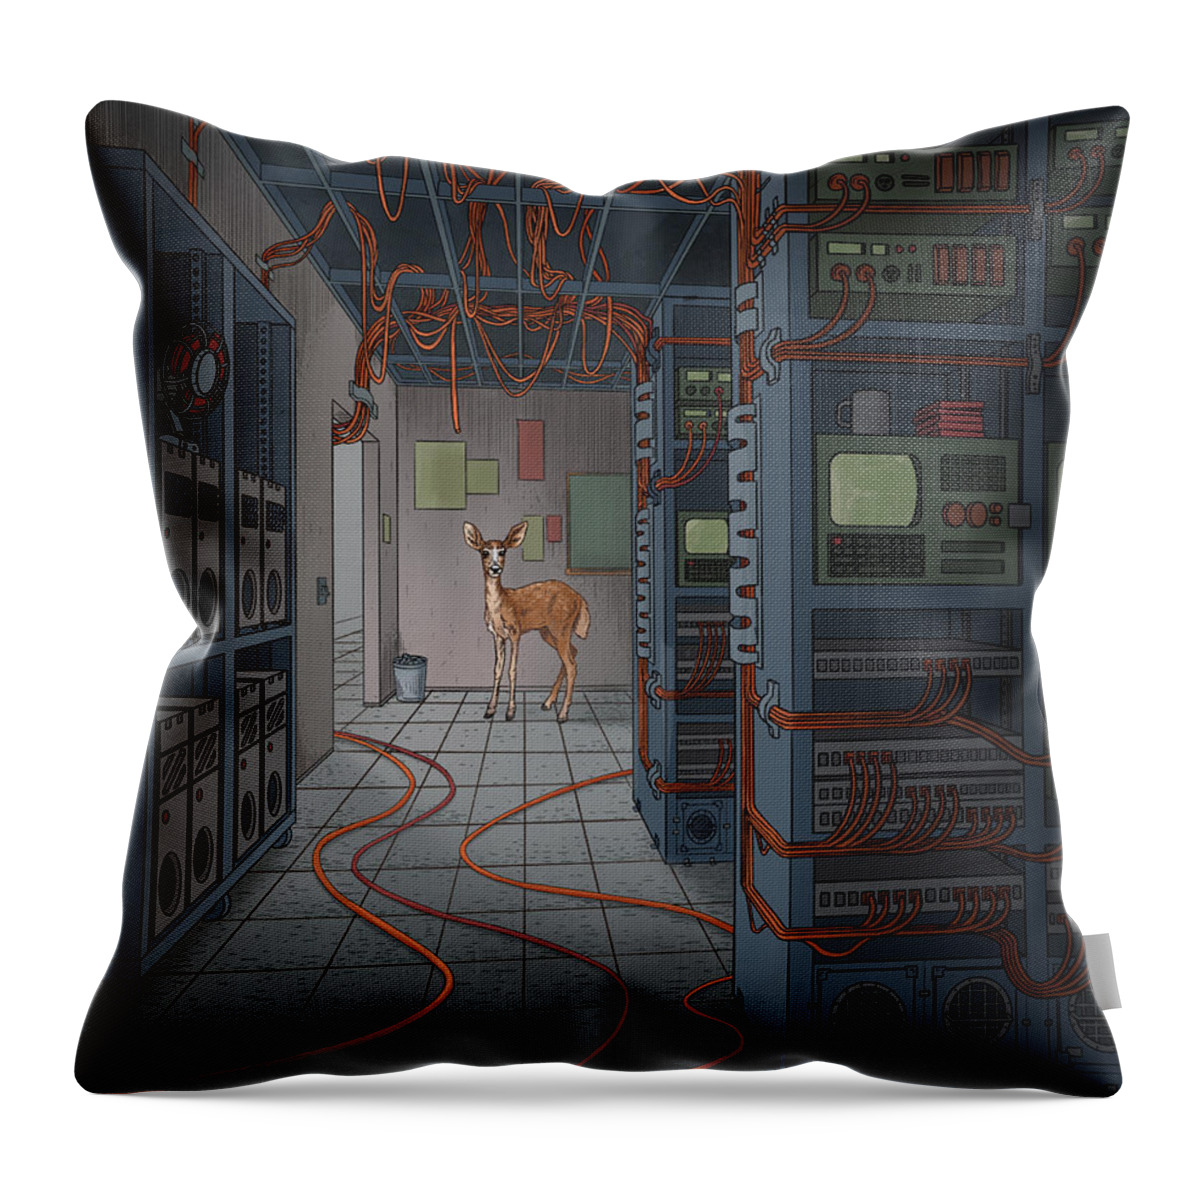  Throw Pillow featuring the digital art Data _ Center by EvanArt - Evan Miller